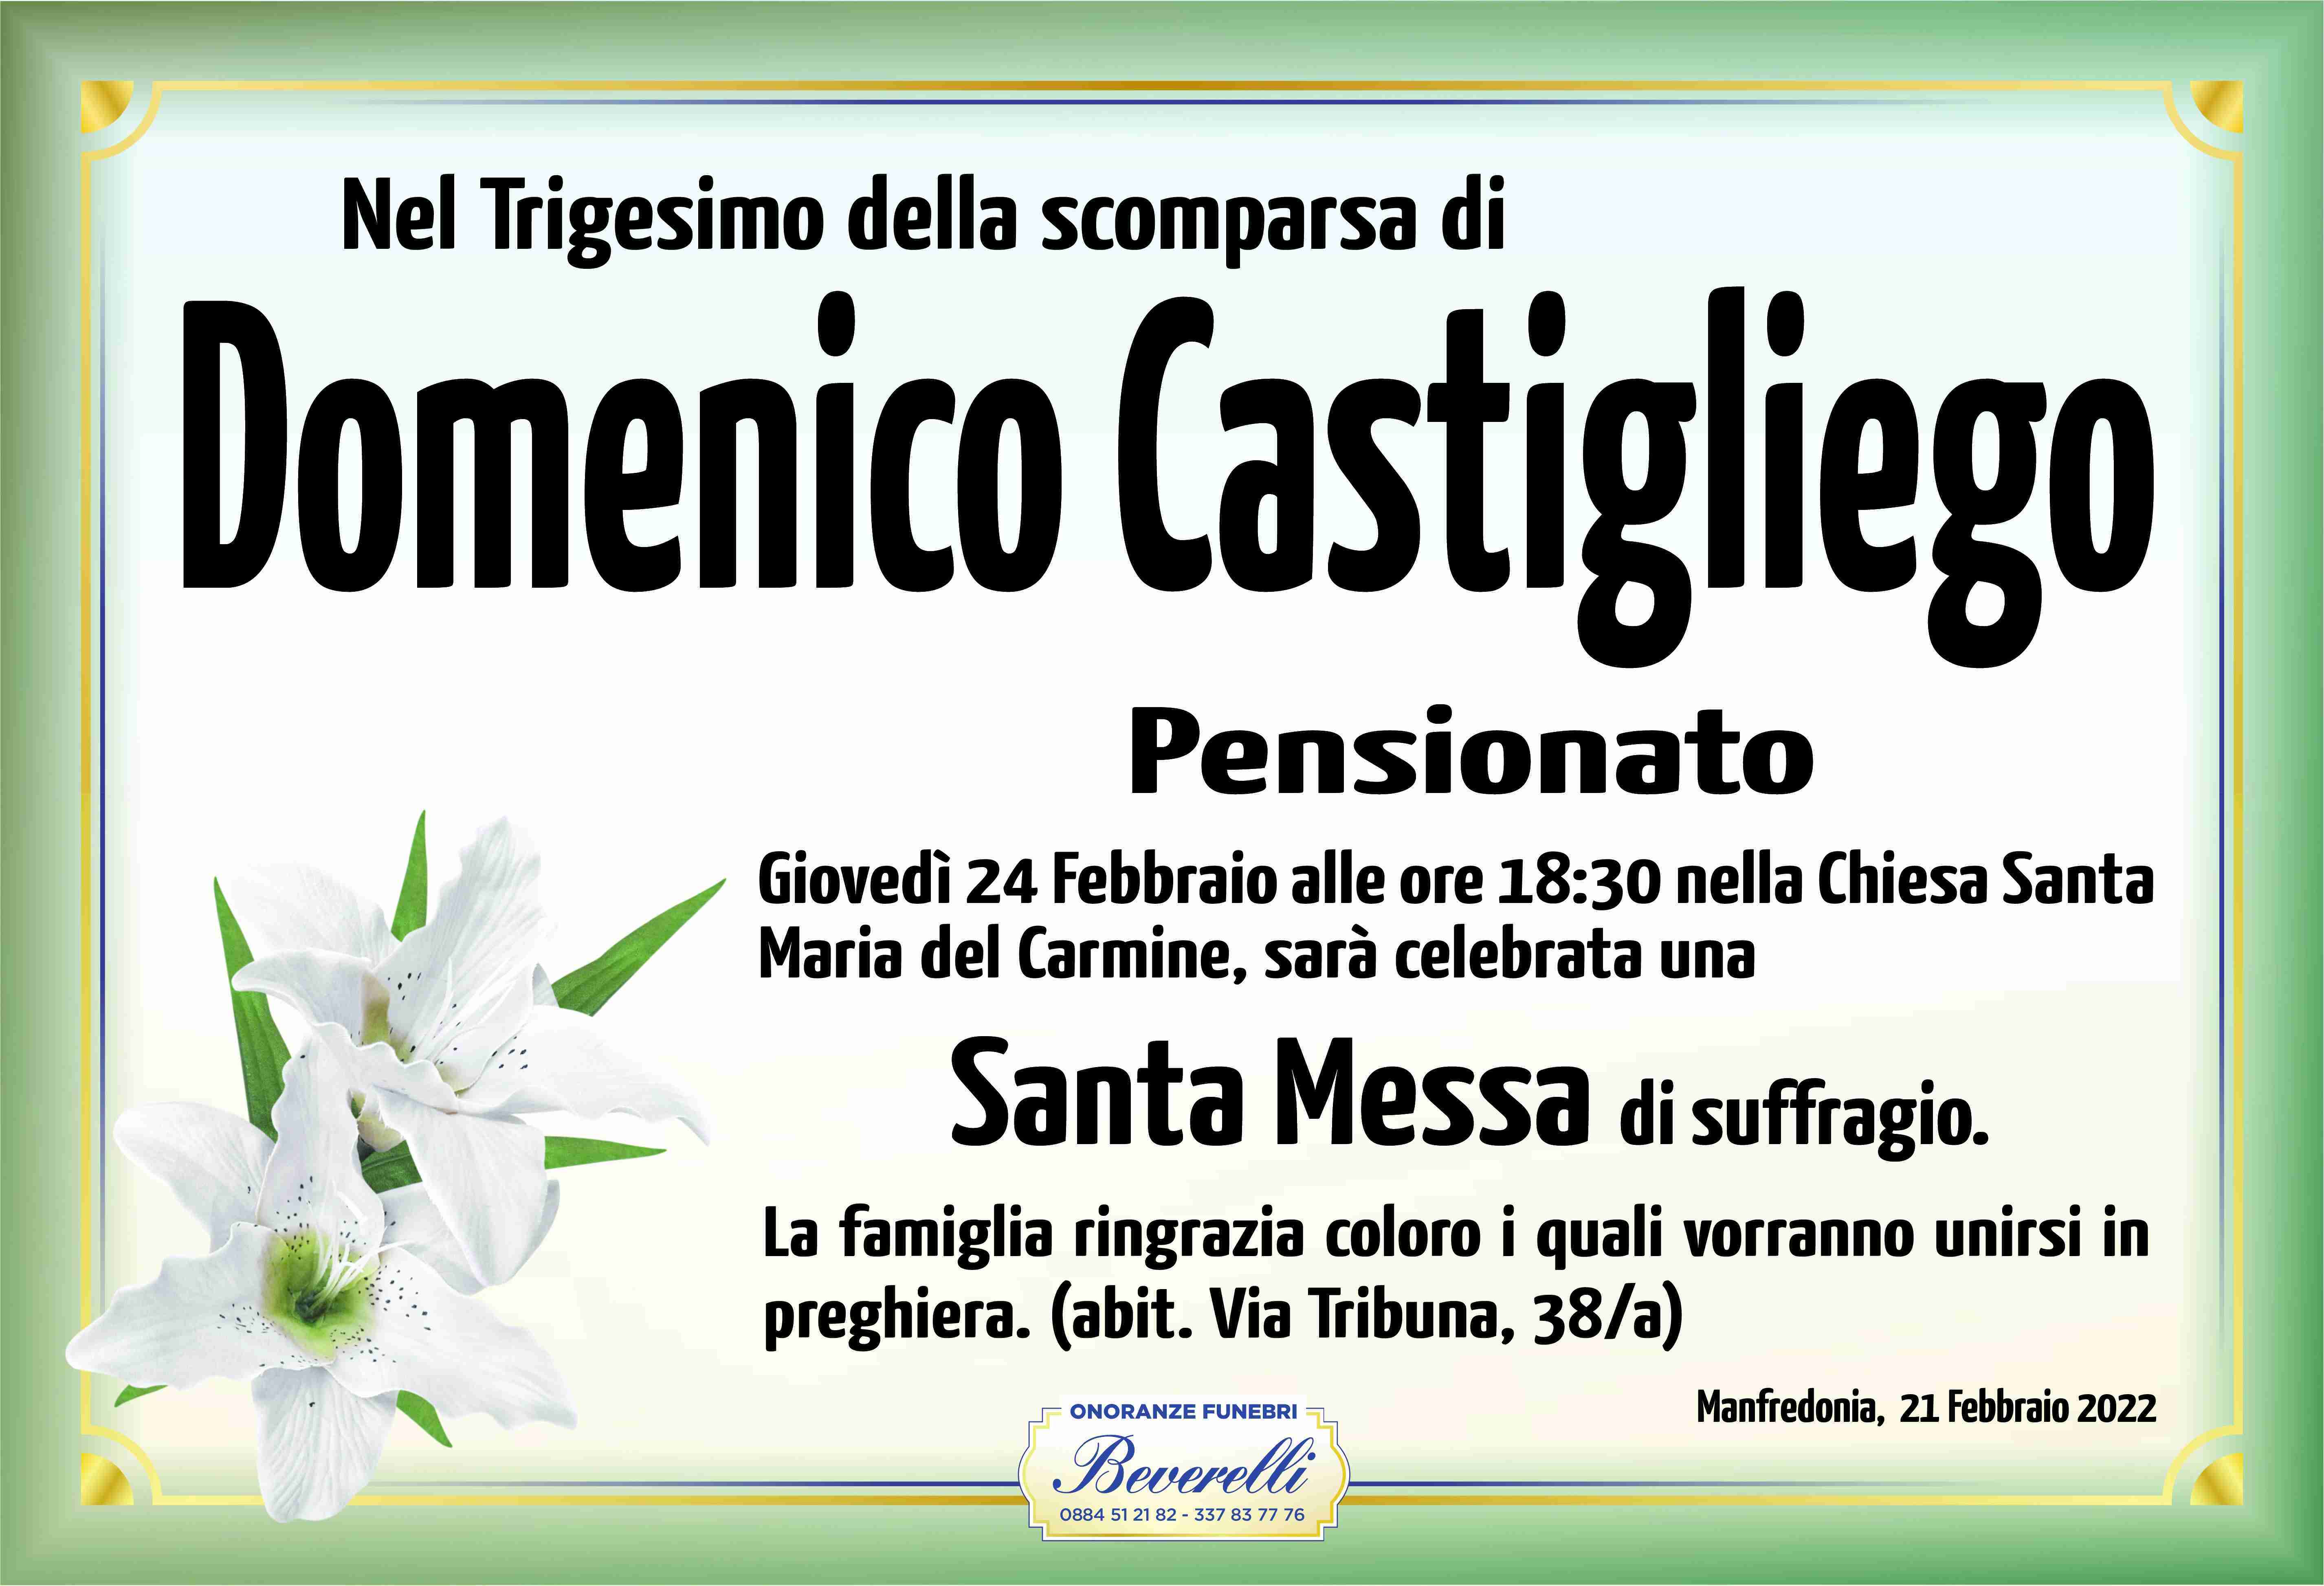 Domenico Castigliego